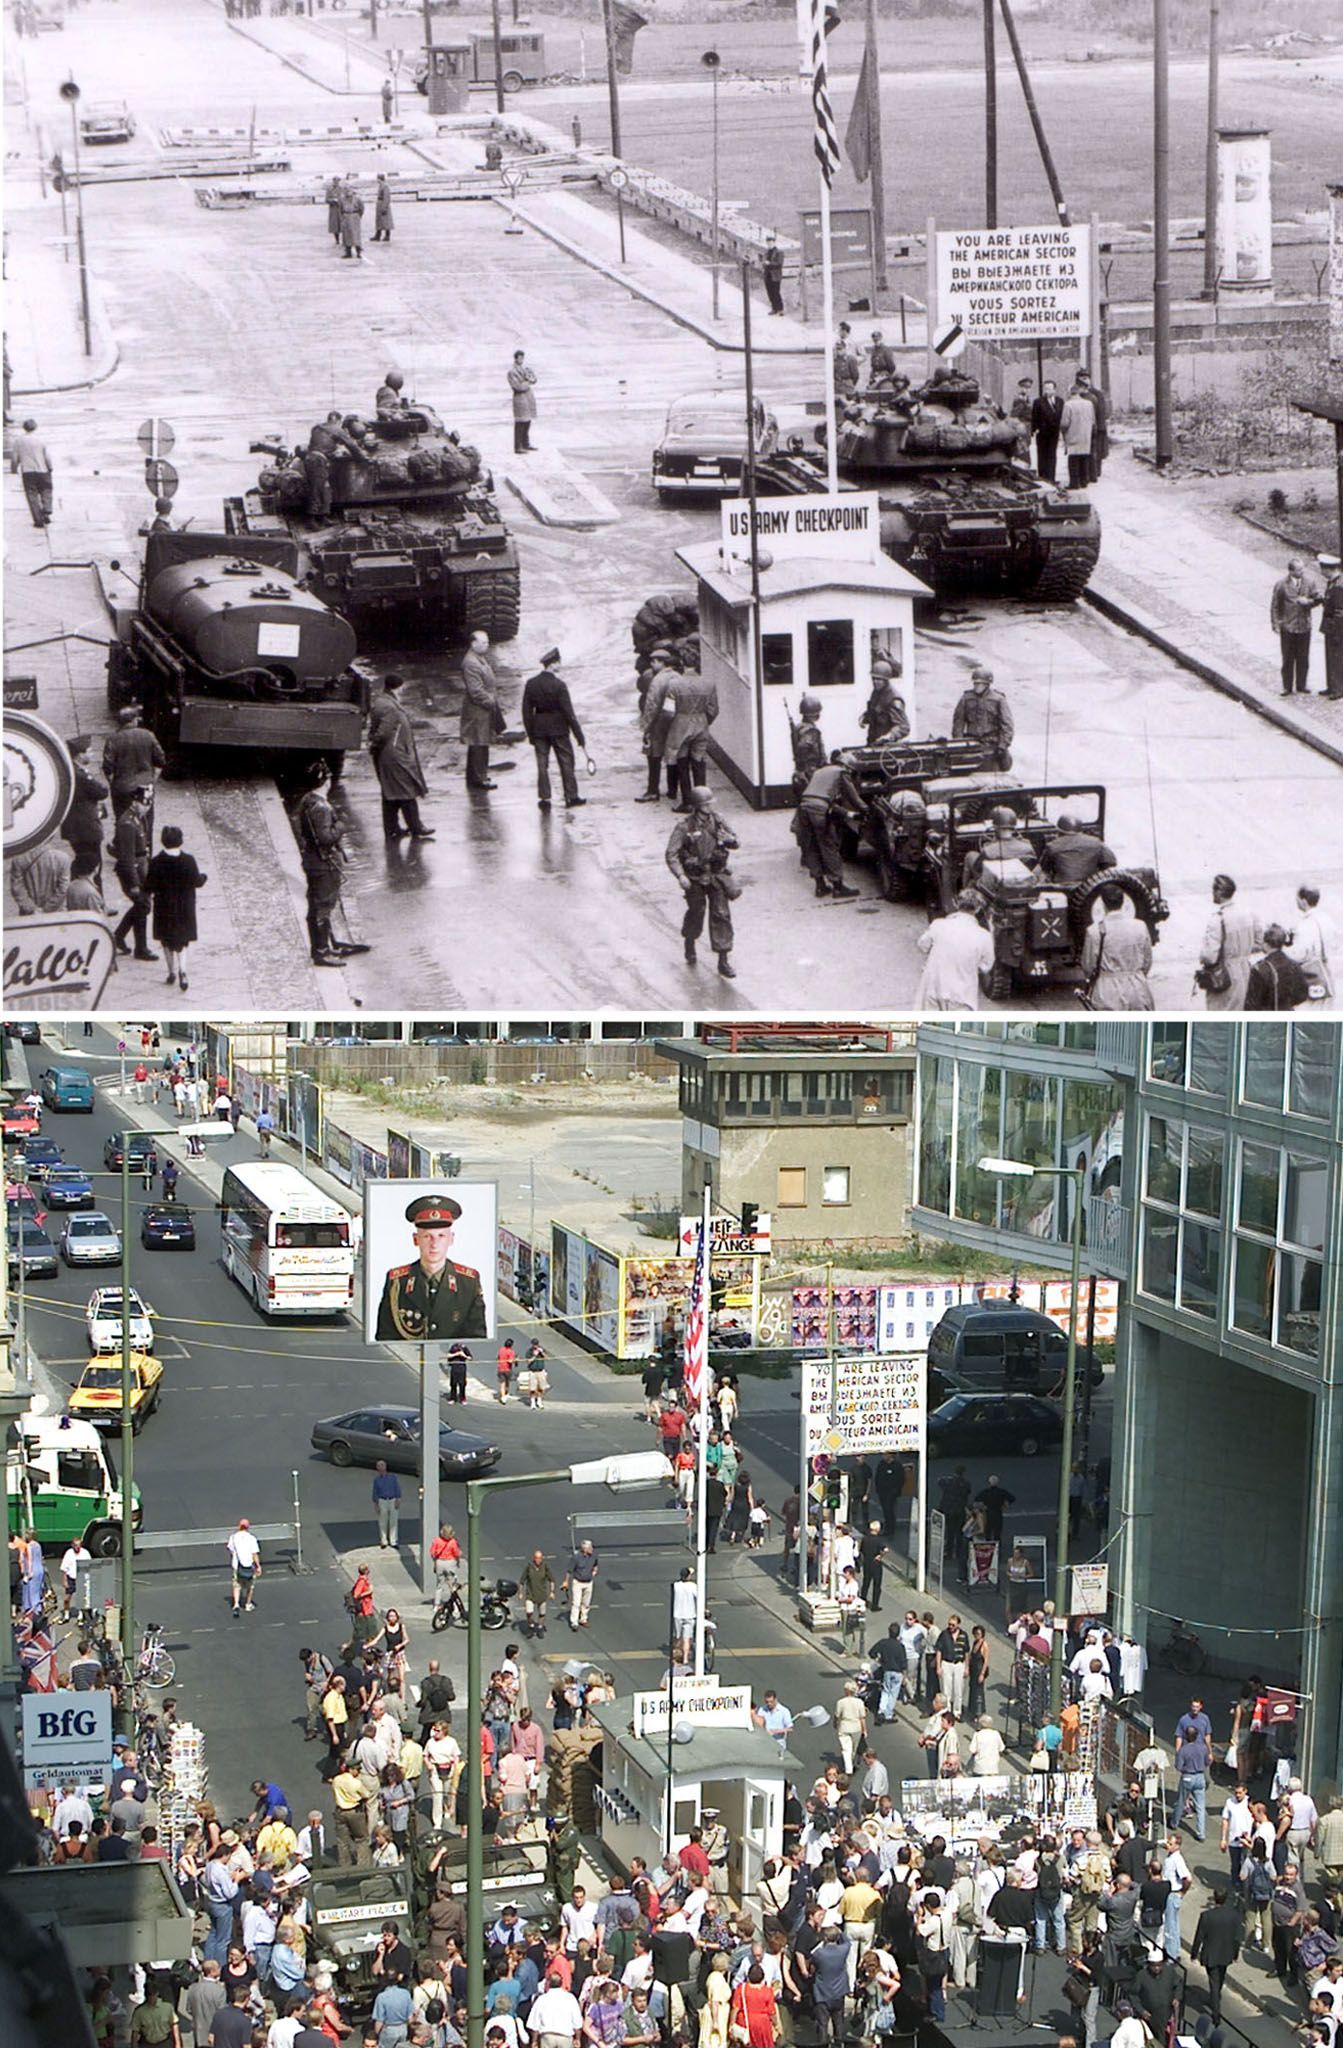 Ein Vergleichsbild zeigt den ehemaligen Checkpoint Charlie der Alliierten in Berlin während des Kalten Krieges im Jahr 1961 und während der Wiedereröffnung einer Nachbildung des Wachhauses am 13. August 2000. Die Wiedereröffnung fand anlässlich des 39. Jahrestages des Baus der Berliner Mauer am 13. August 1961 statt.